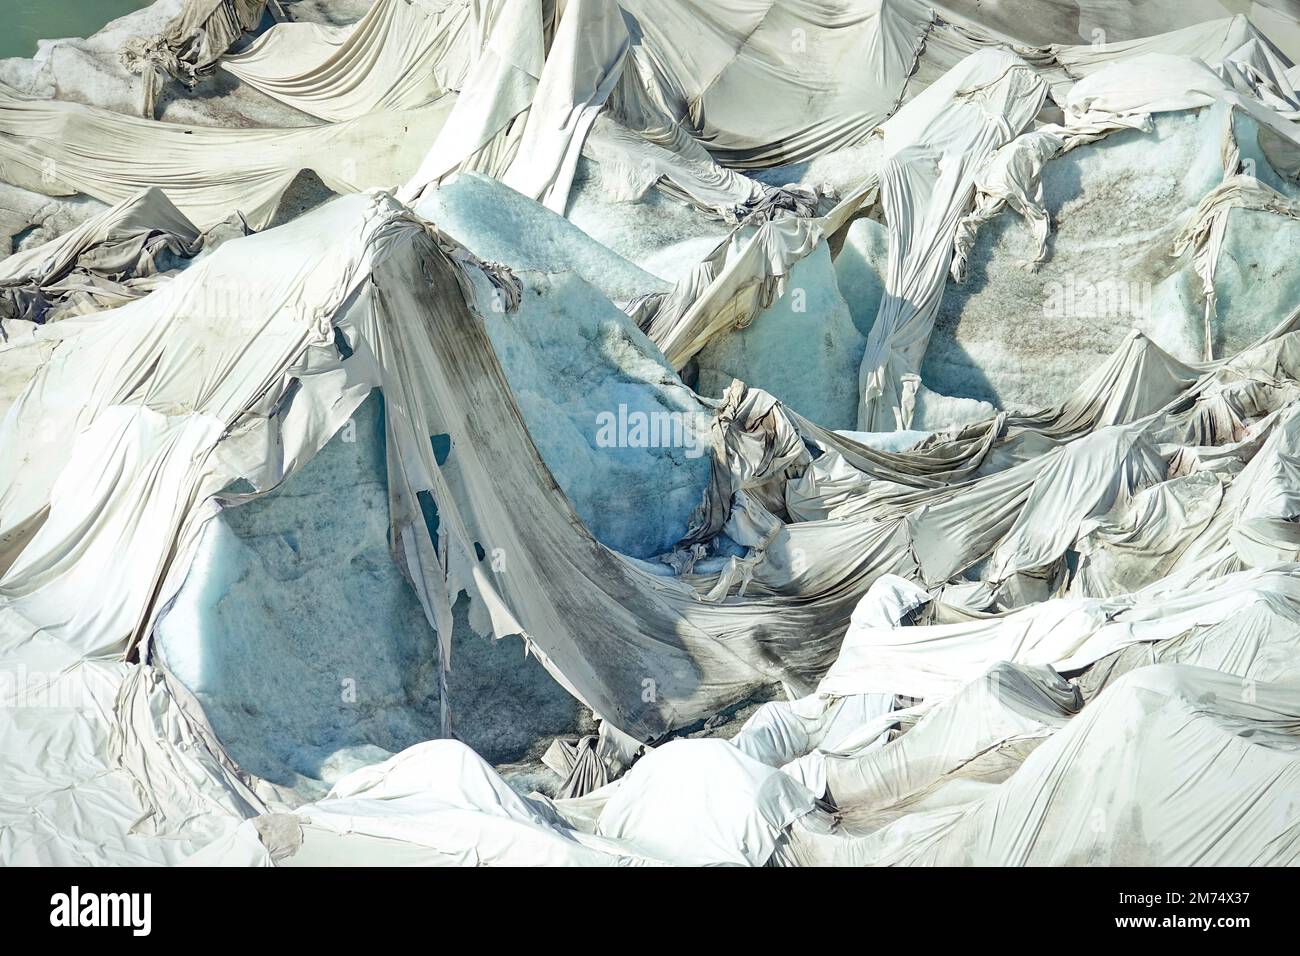 Das Schmelzen des Rhongletschers ist das sichtbarste Zeichen des Klimawandels. Aufgrund der hohen Temperaturen können weiße Laken den Gletscher nicht mehr schützen Stockfoto